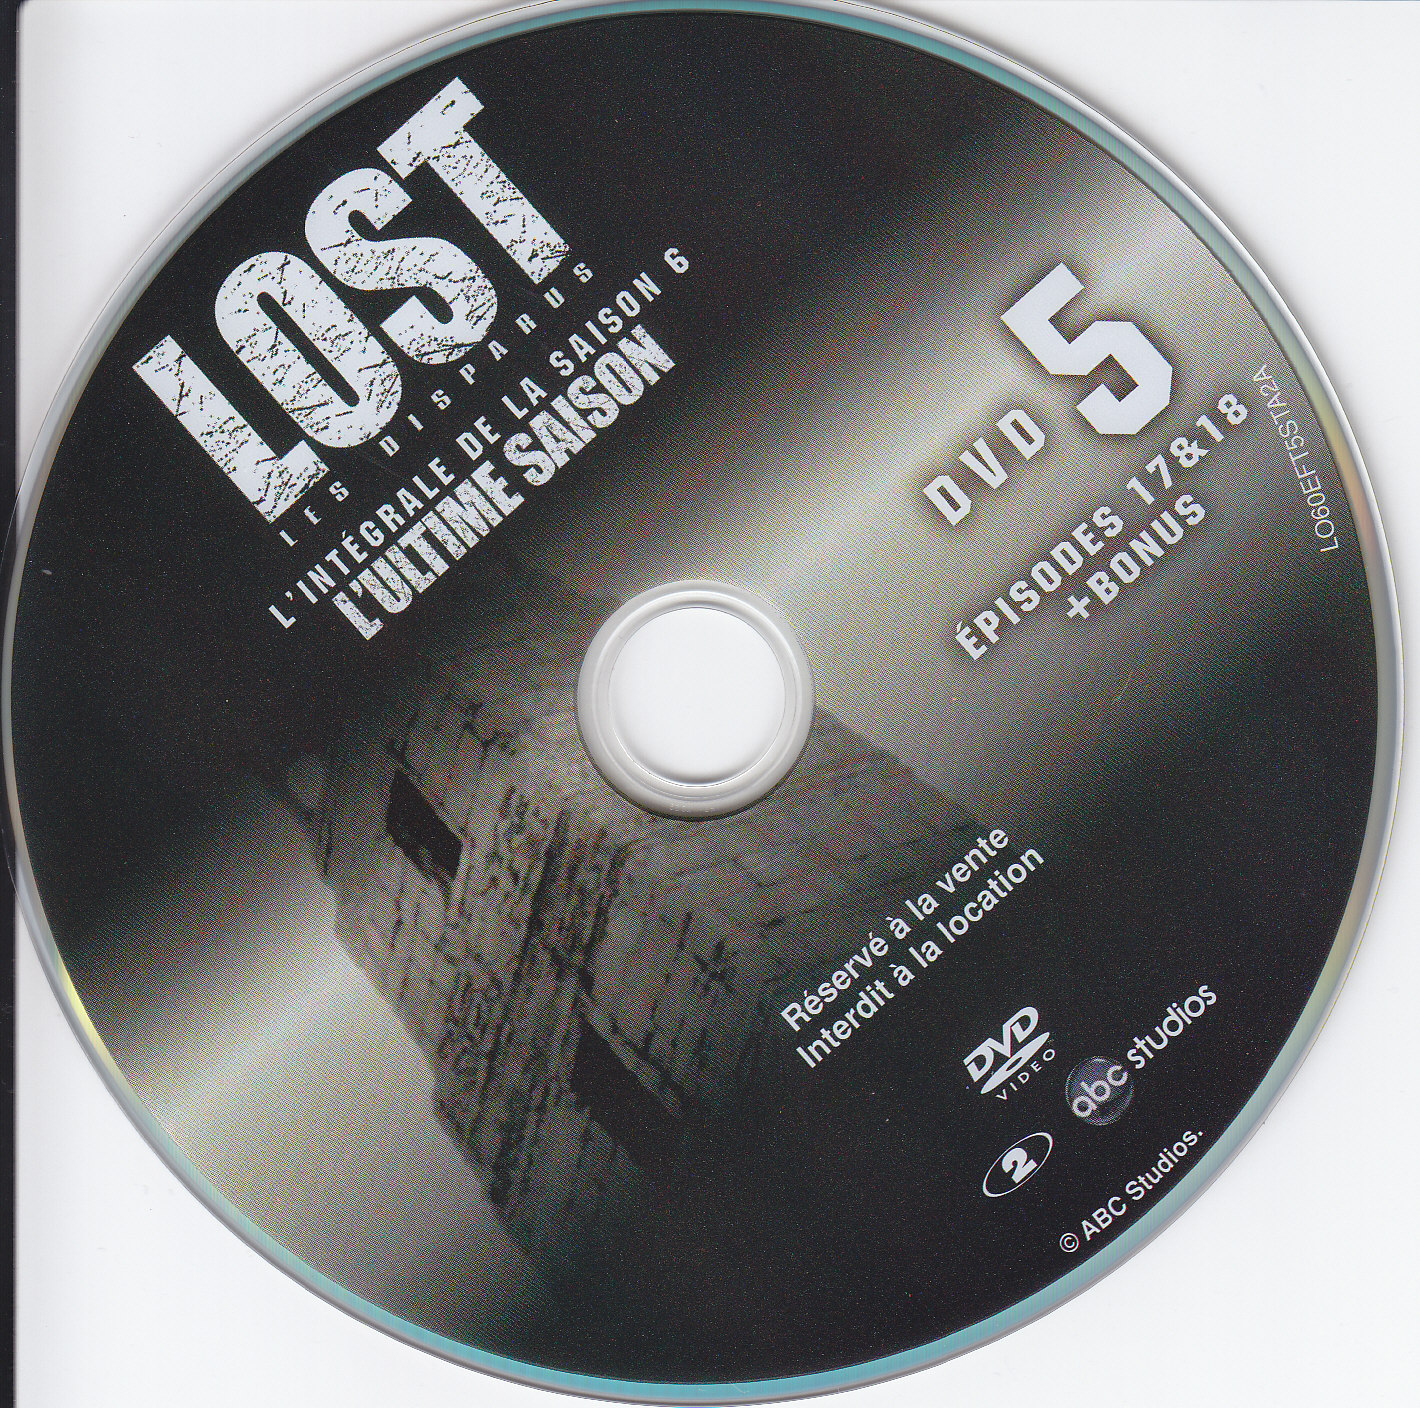 Lost Saison 6 DVD 5